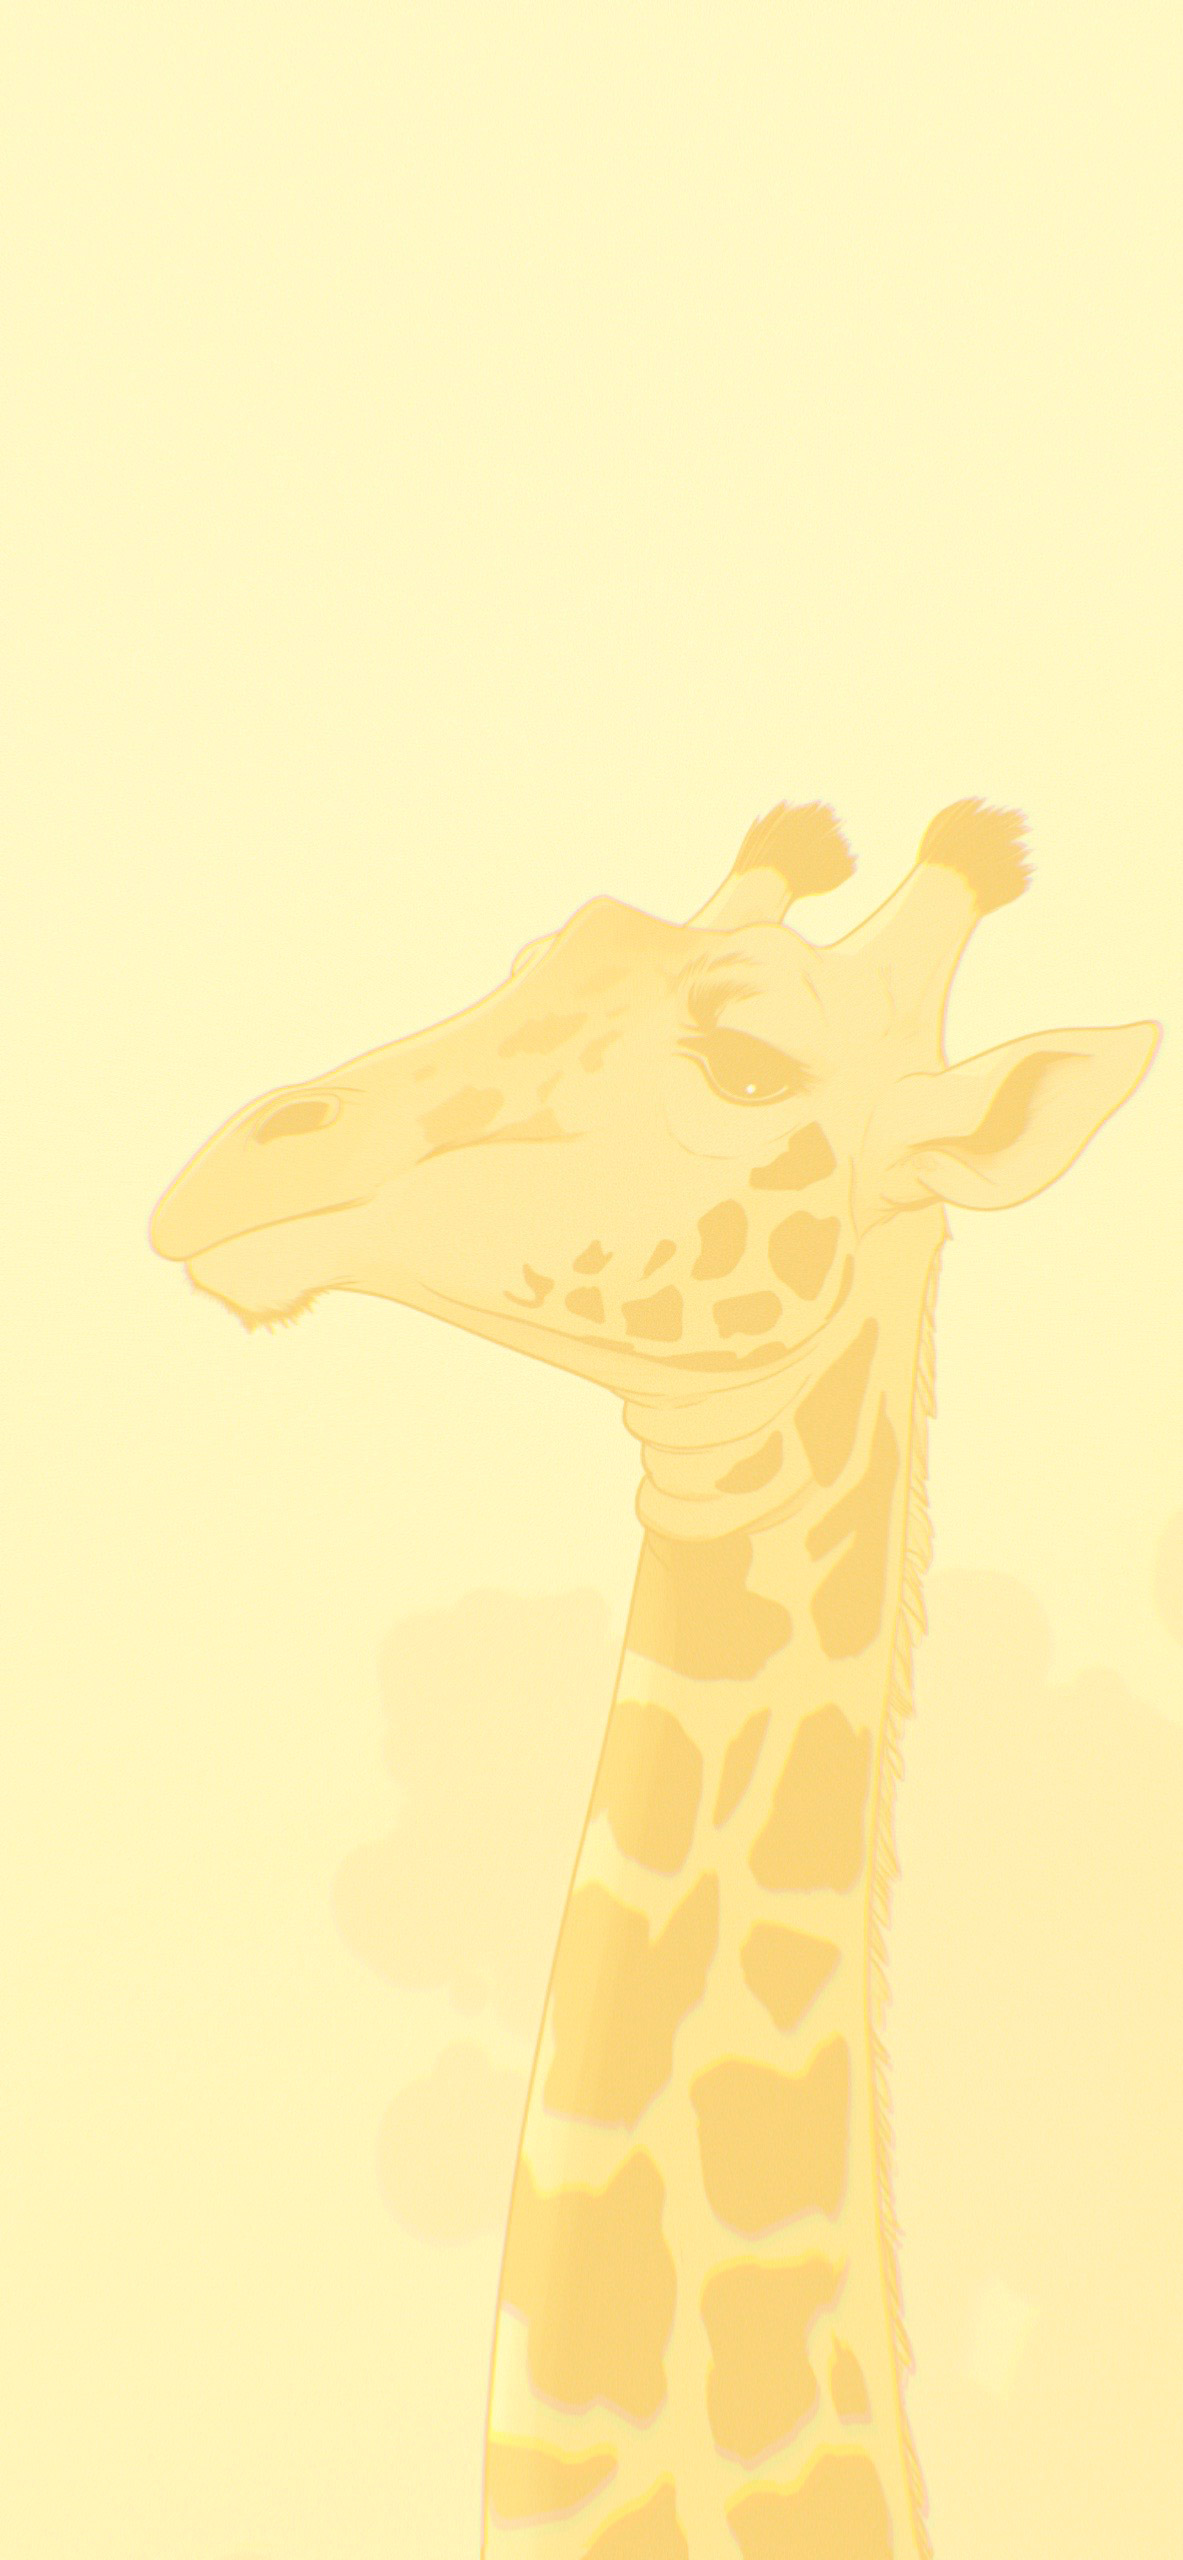 Giraffe Light Yellow Wallpaper iPhone - Aesthetic Giraffe Wallpaper